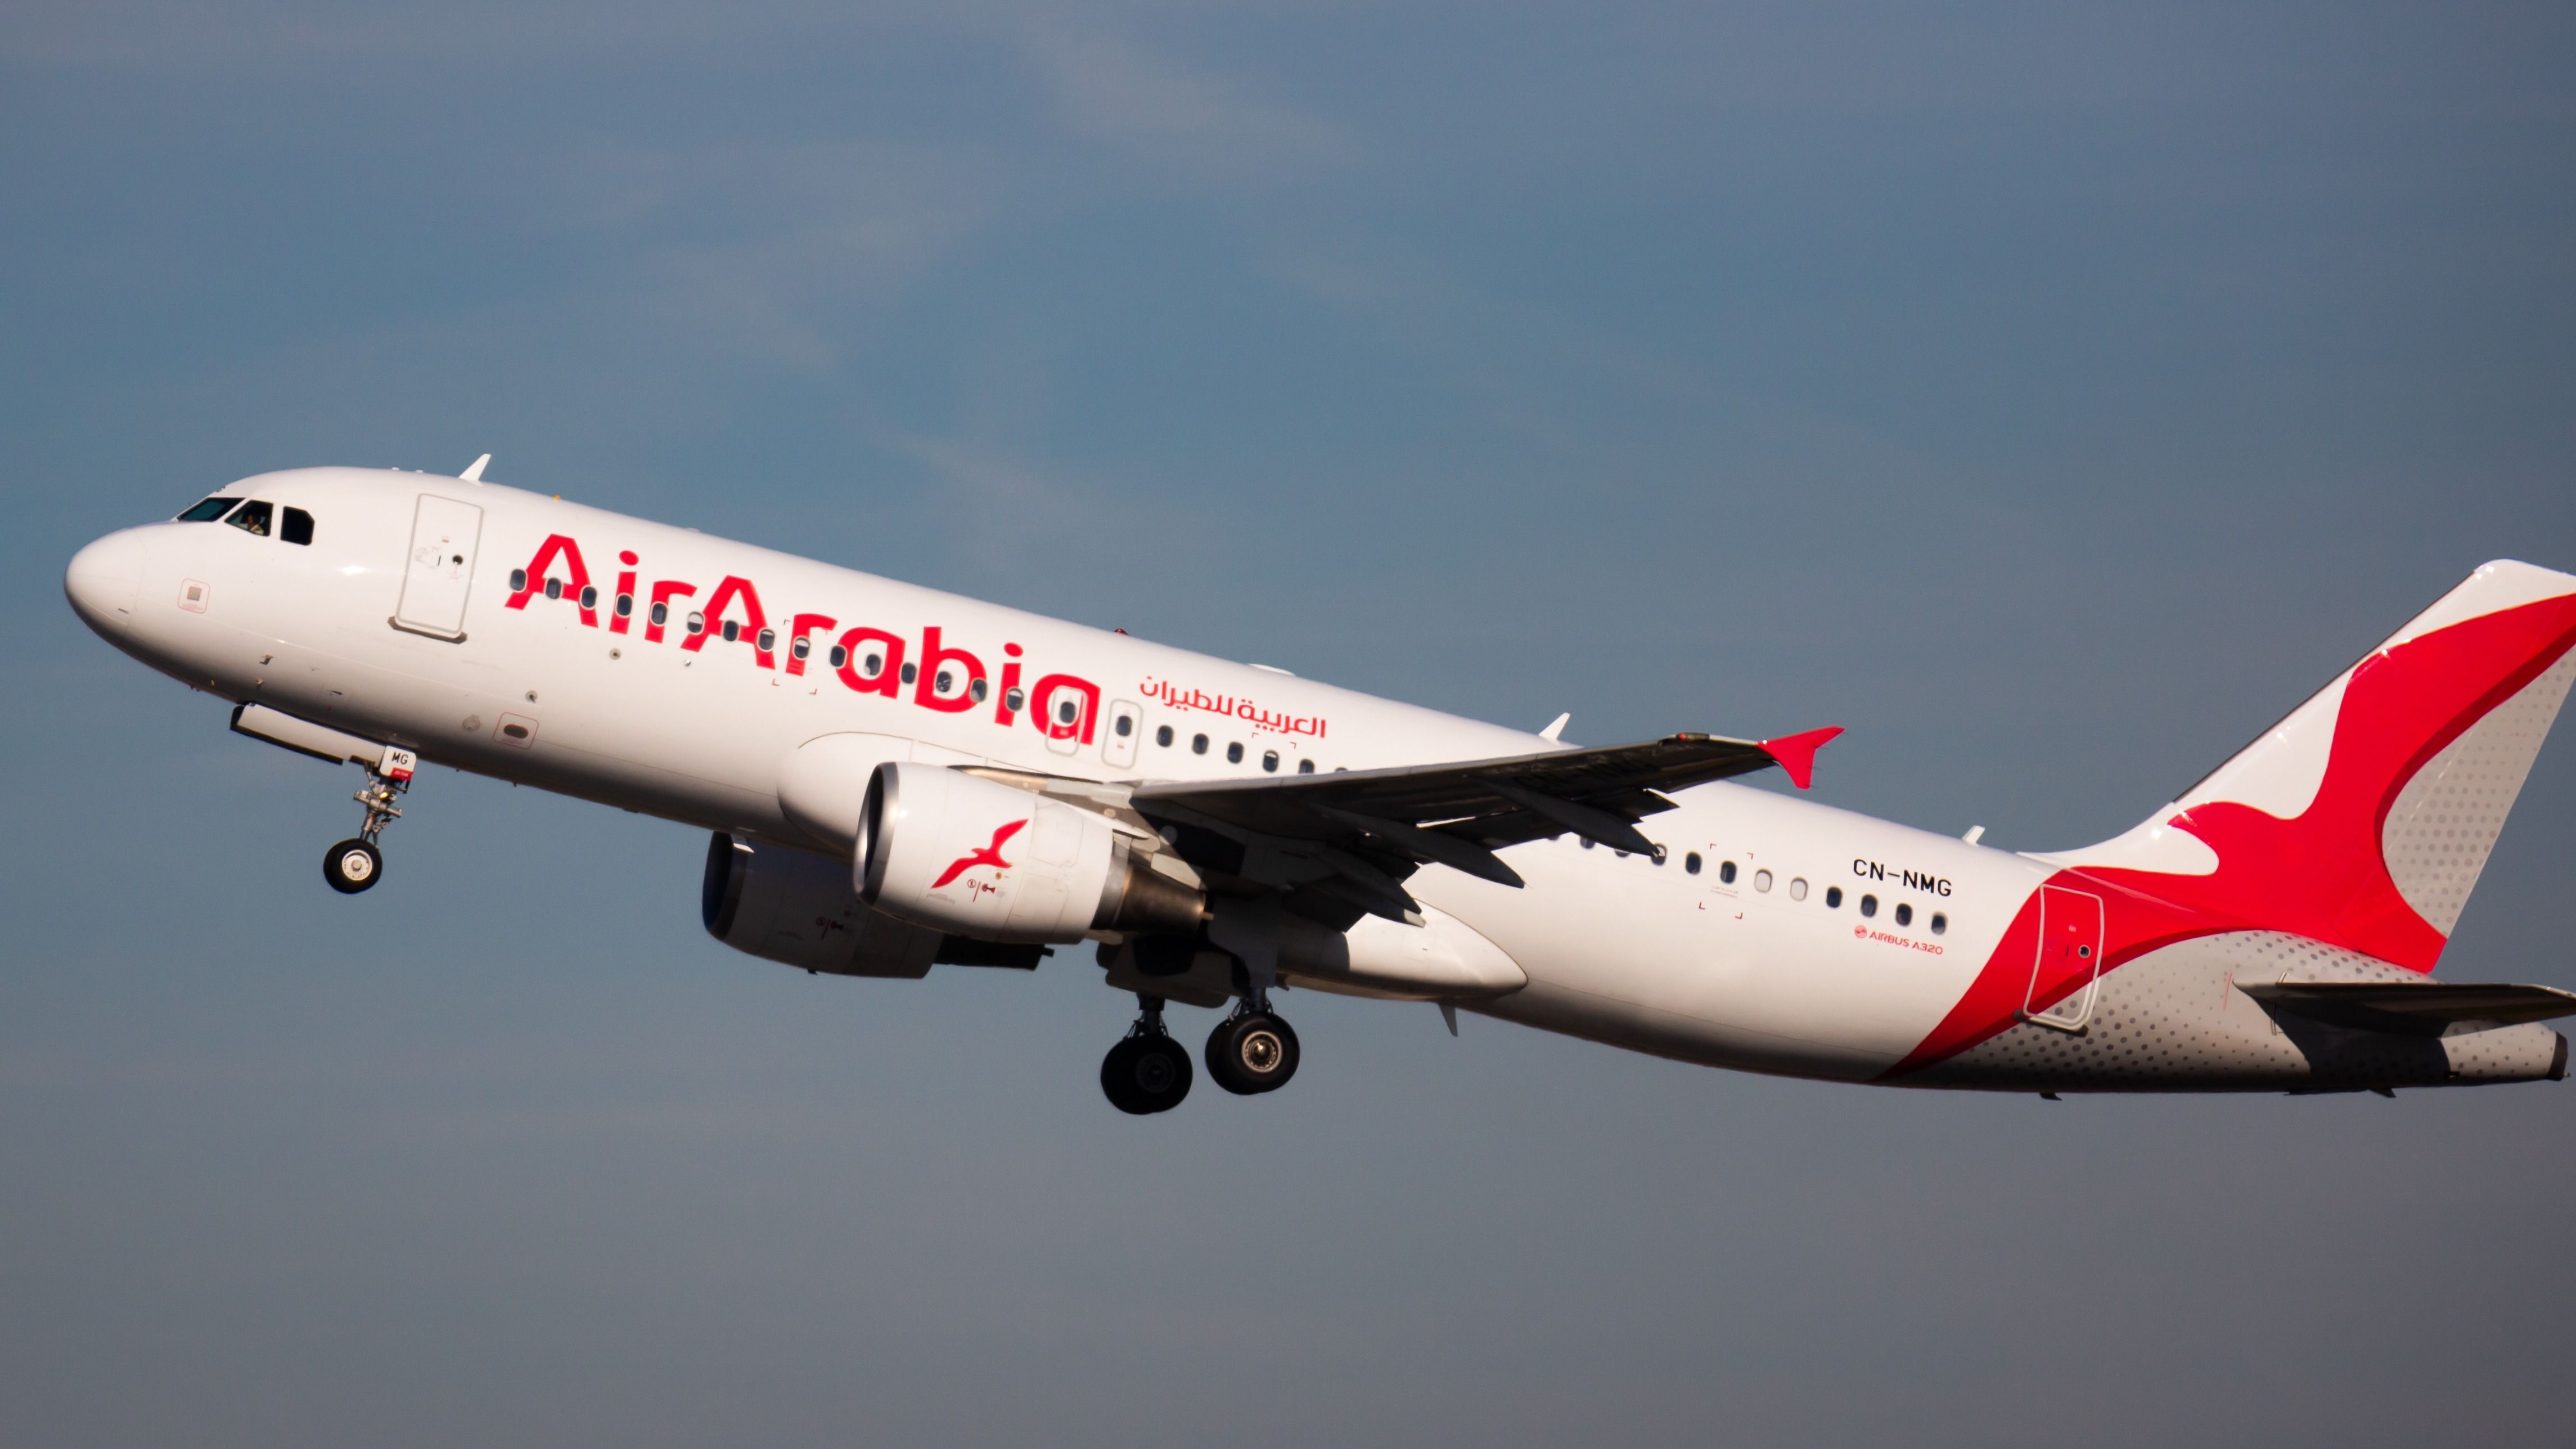 An AirArabia A320 taking off